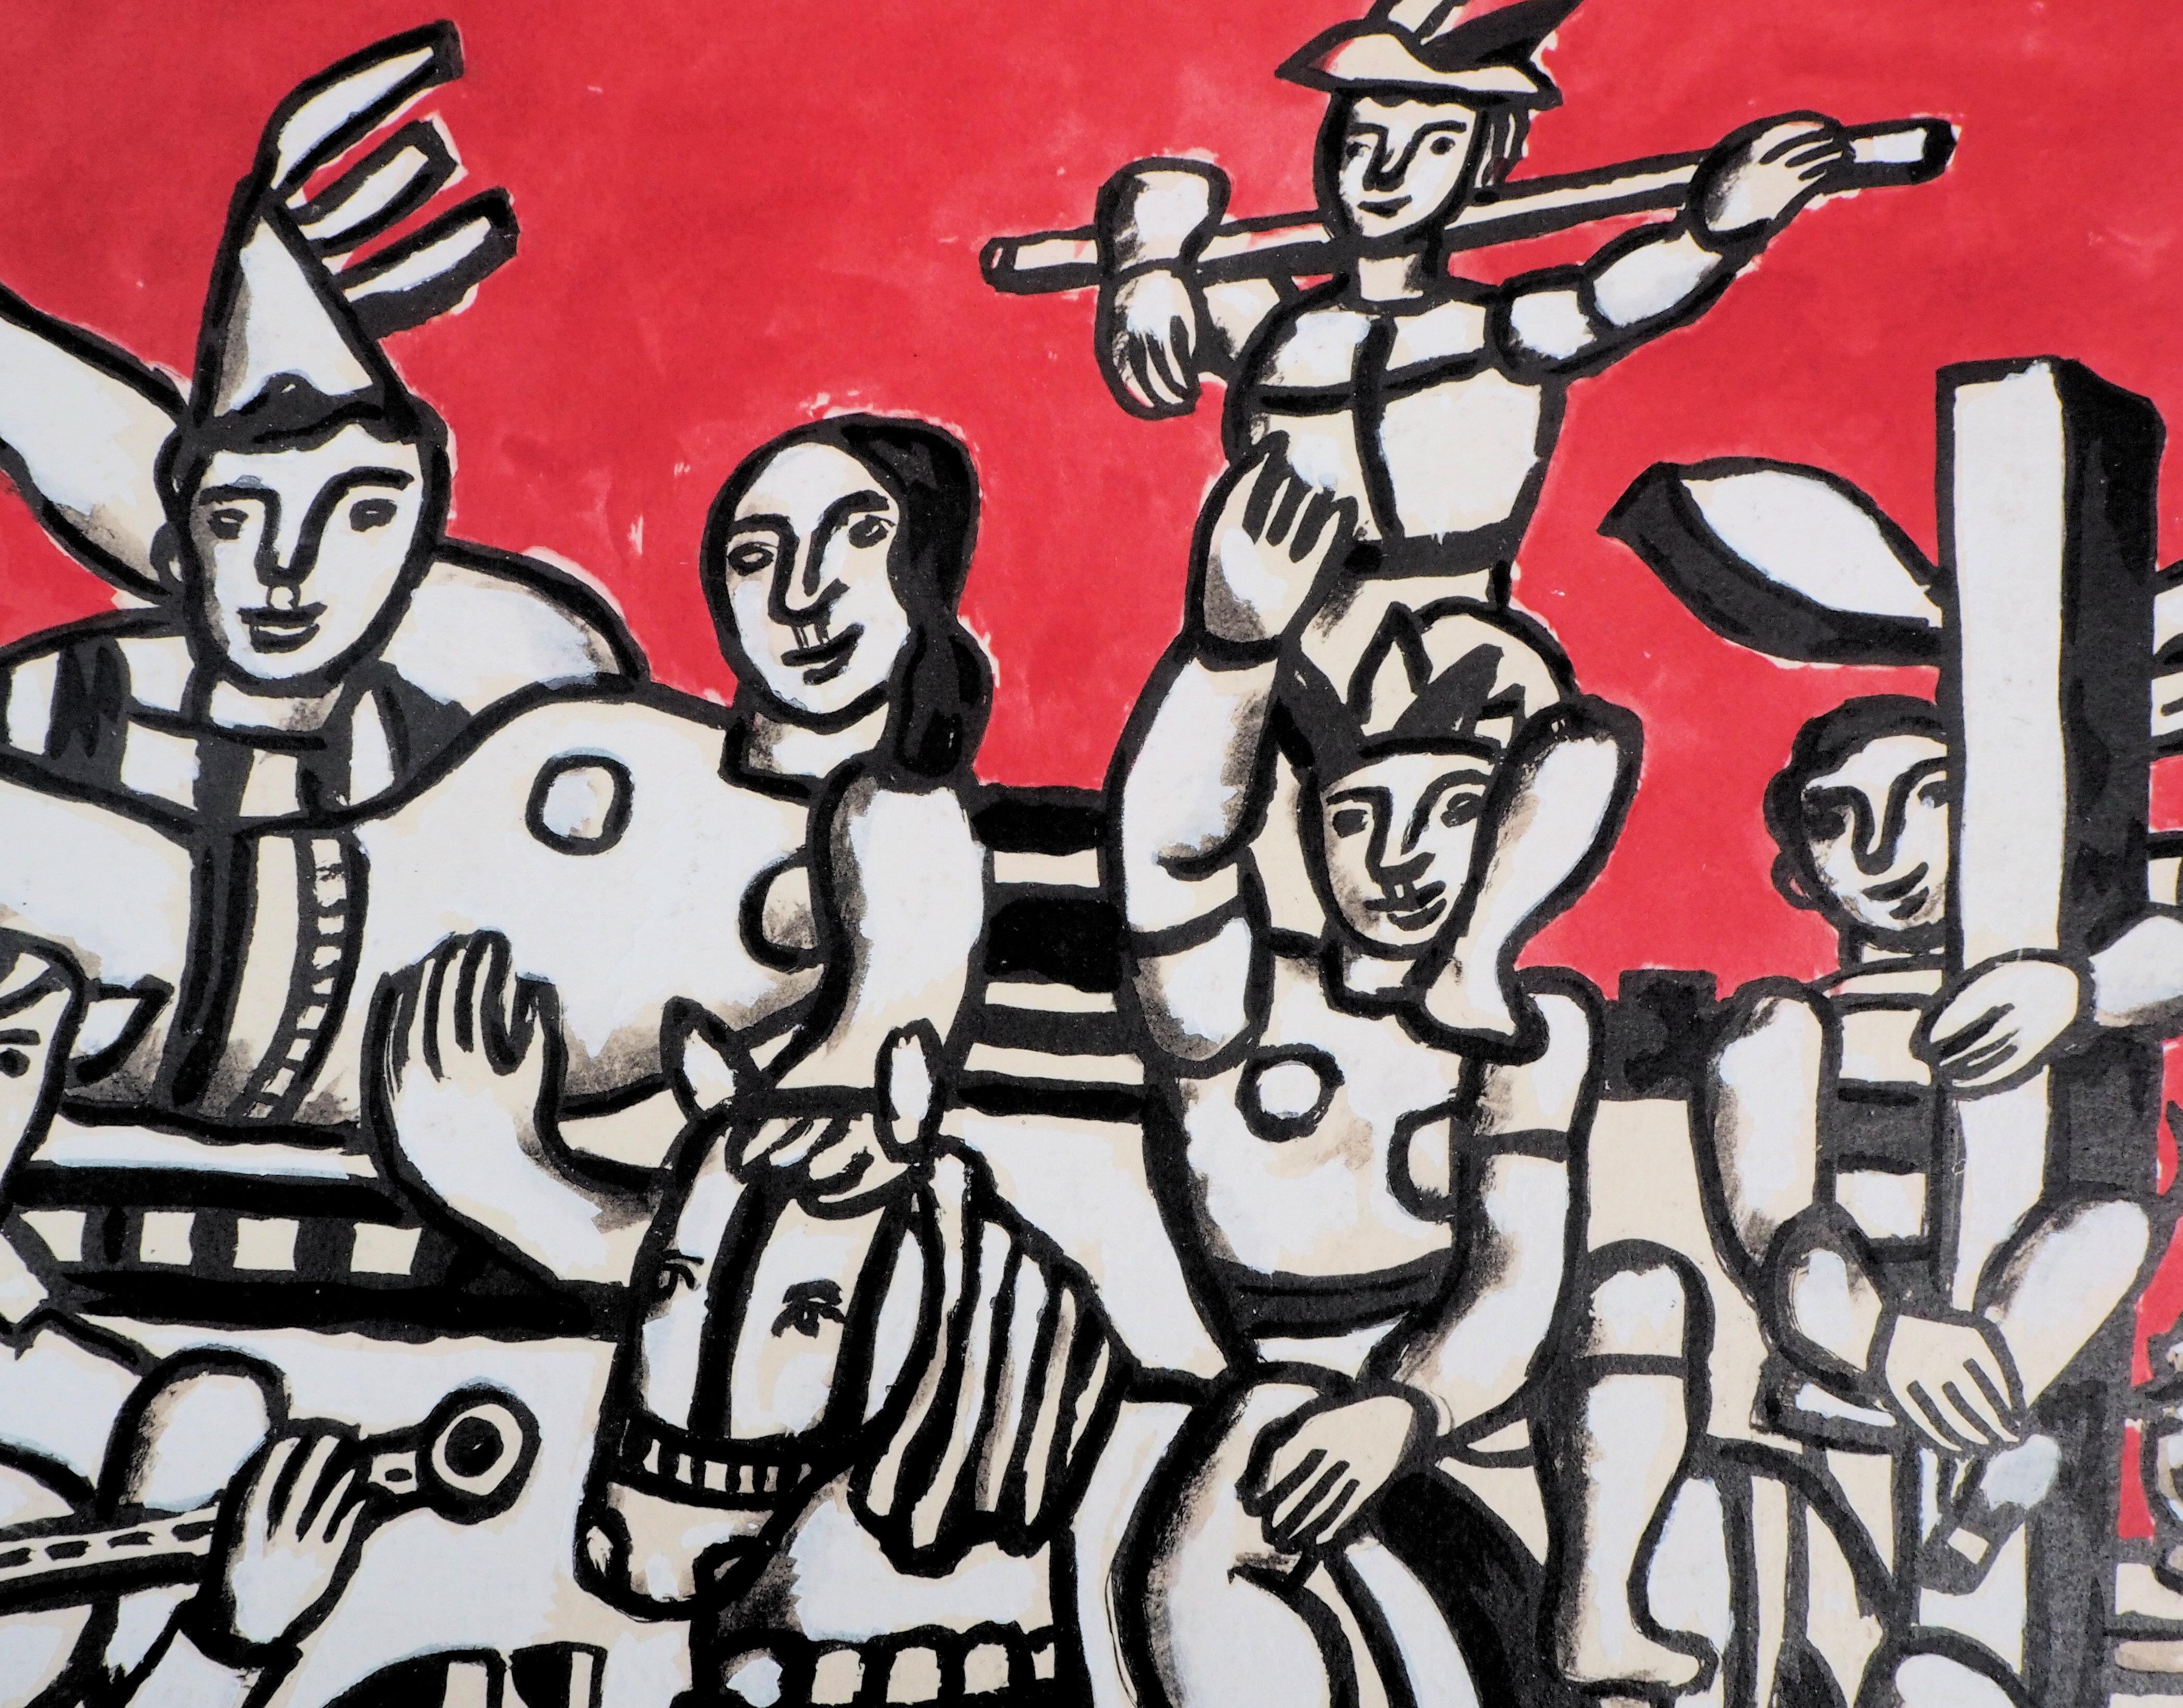 Fernand LÉGER 
Glückliche Menschen: Die Parade, 1959

Original-Lithographie und Schablone 
Gedruckte Unterschrift auf der Platte
Auf Vellum Auvergne 39,5 x 50 cm (ca. 15,3 x 19,6 Inches)
Veröffentlicht im Jahr 1959, unter der Kontrolle der Frau von 